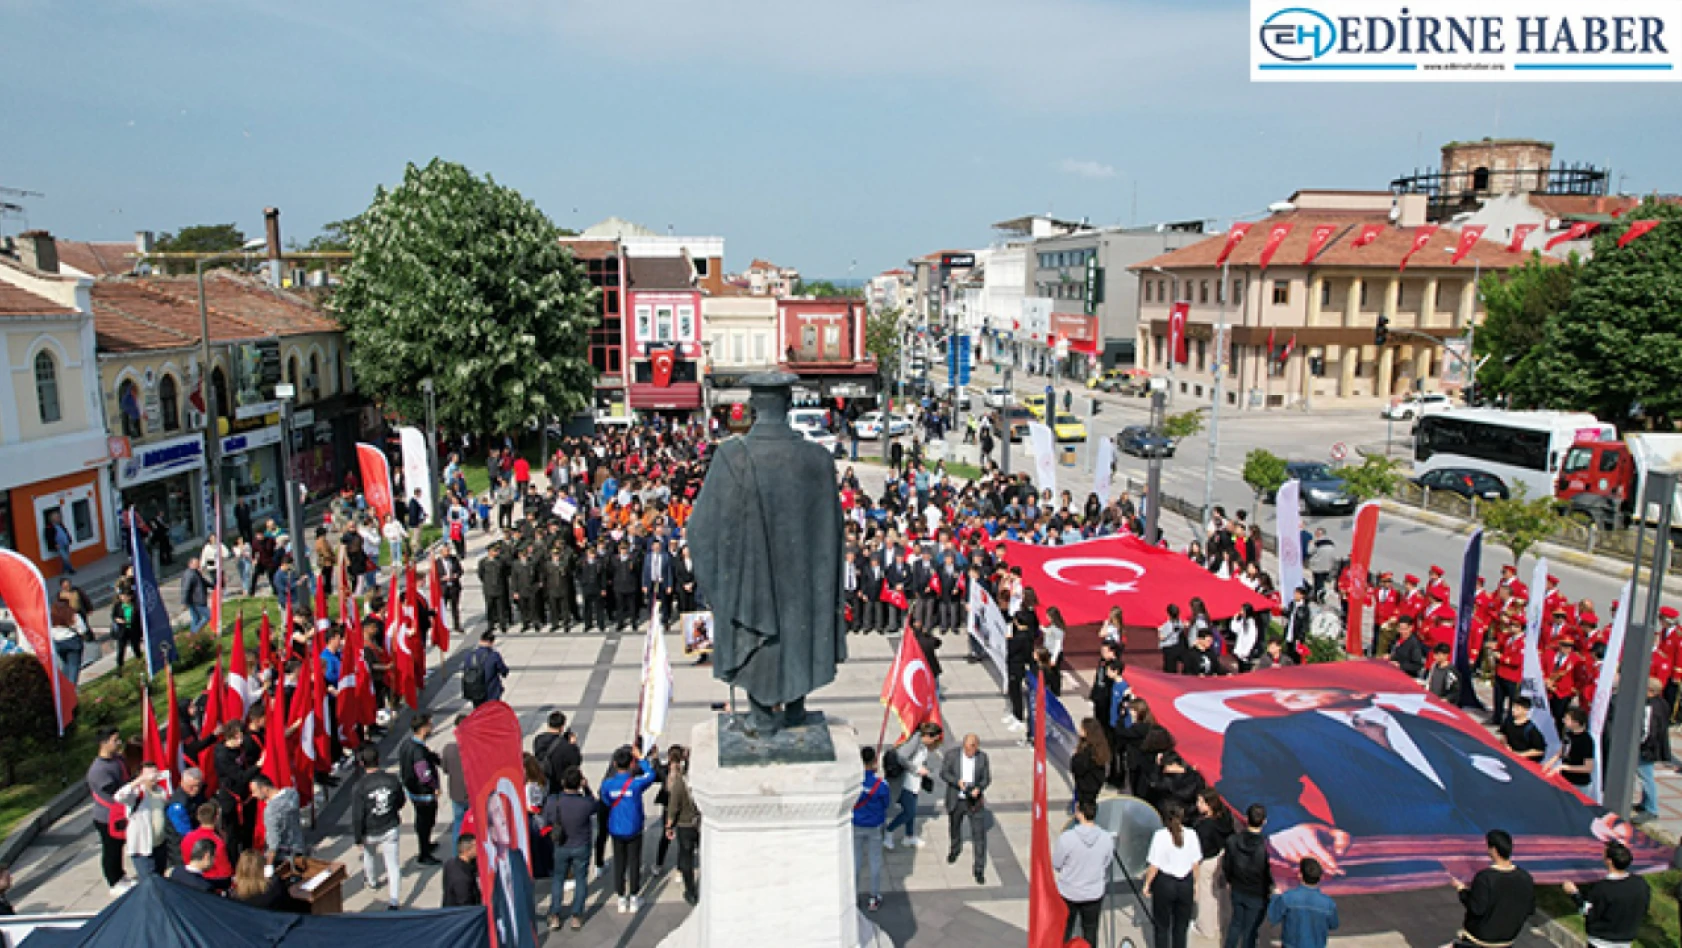 Edirne'de 19 Mayıs coşkusu yaşandı